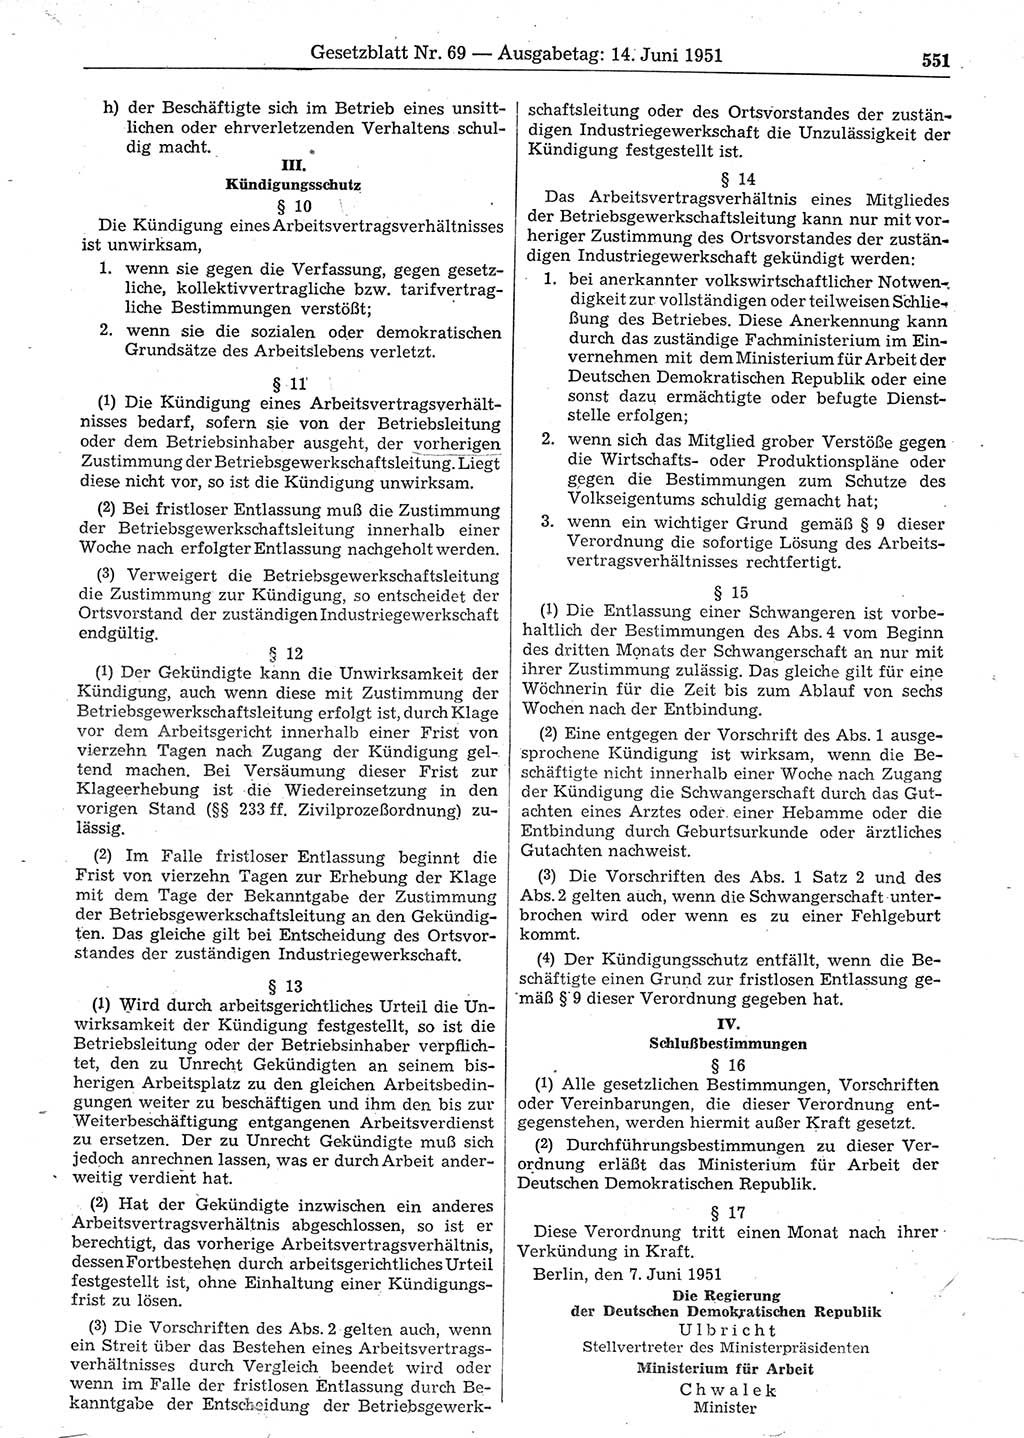 Gesetzblatt (GBl.) der Deutschen Demokratischen Republik (DDR) 1951, Seite 551 (GBl. DDR 1951, S. 551)